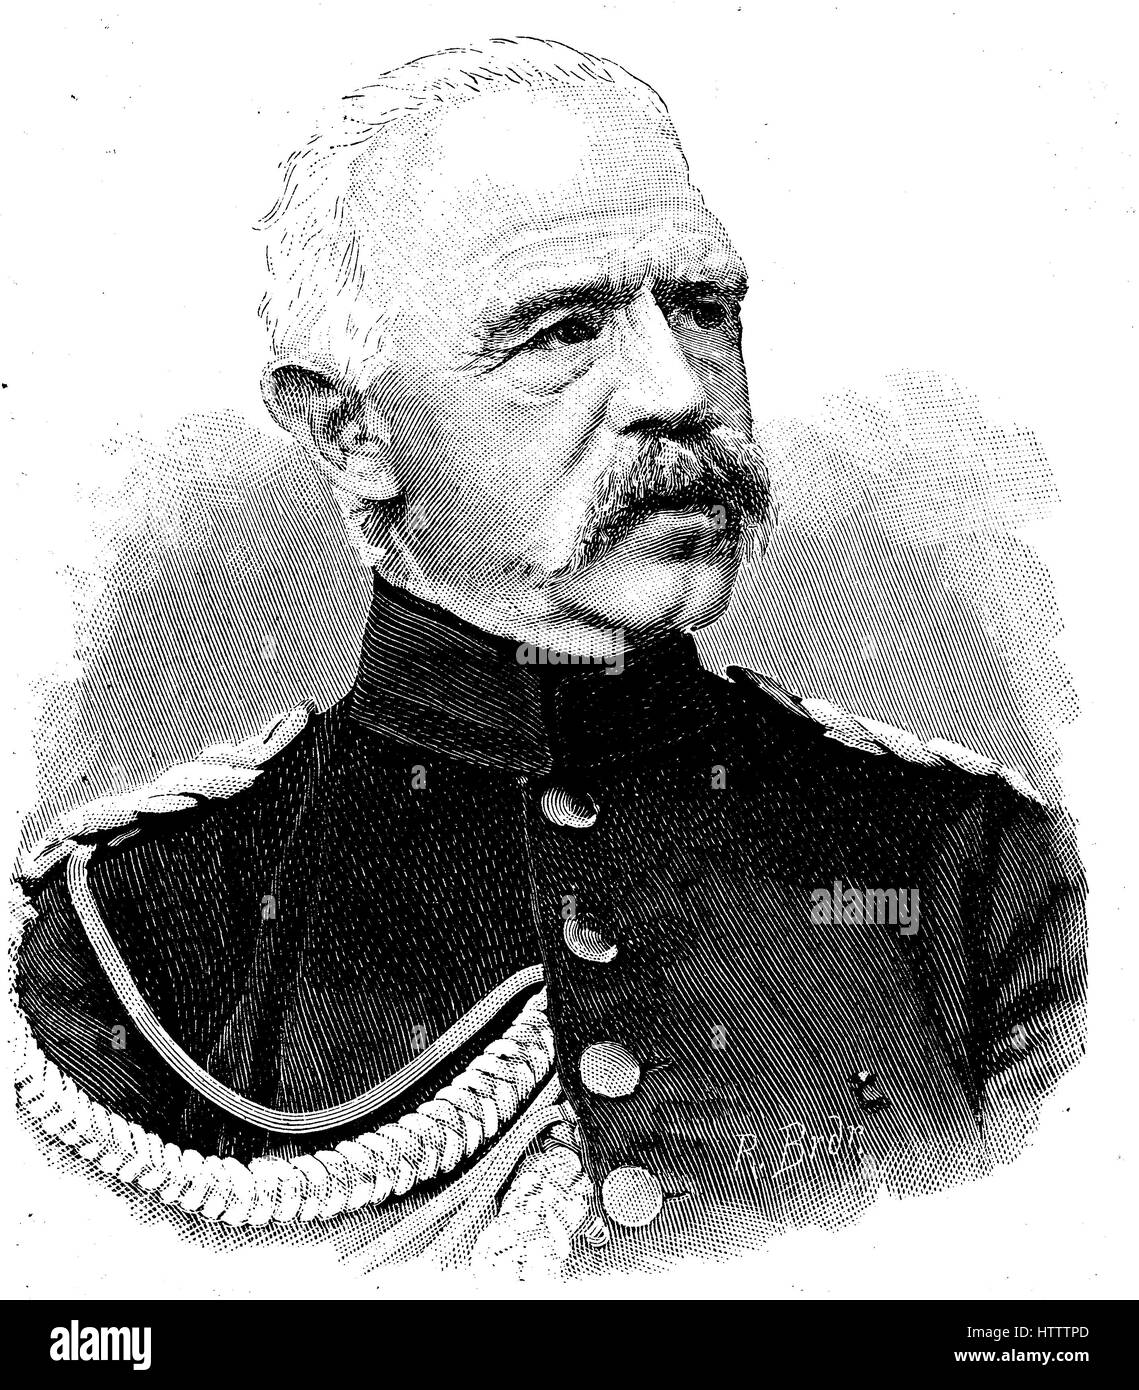 Adolf Albert Ferdinand Karl Friedrich von Bonin, 11. November 1803 - 16. April 1872, war ein preußischer Offizier am meisten kürzlich General der Infanterie, Reproduktion von einem Holzschnitt aus dem Jahr 1882, digital verbessert Stockfoto